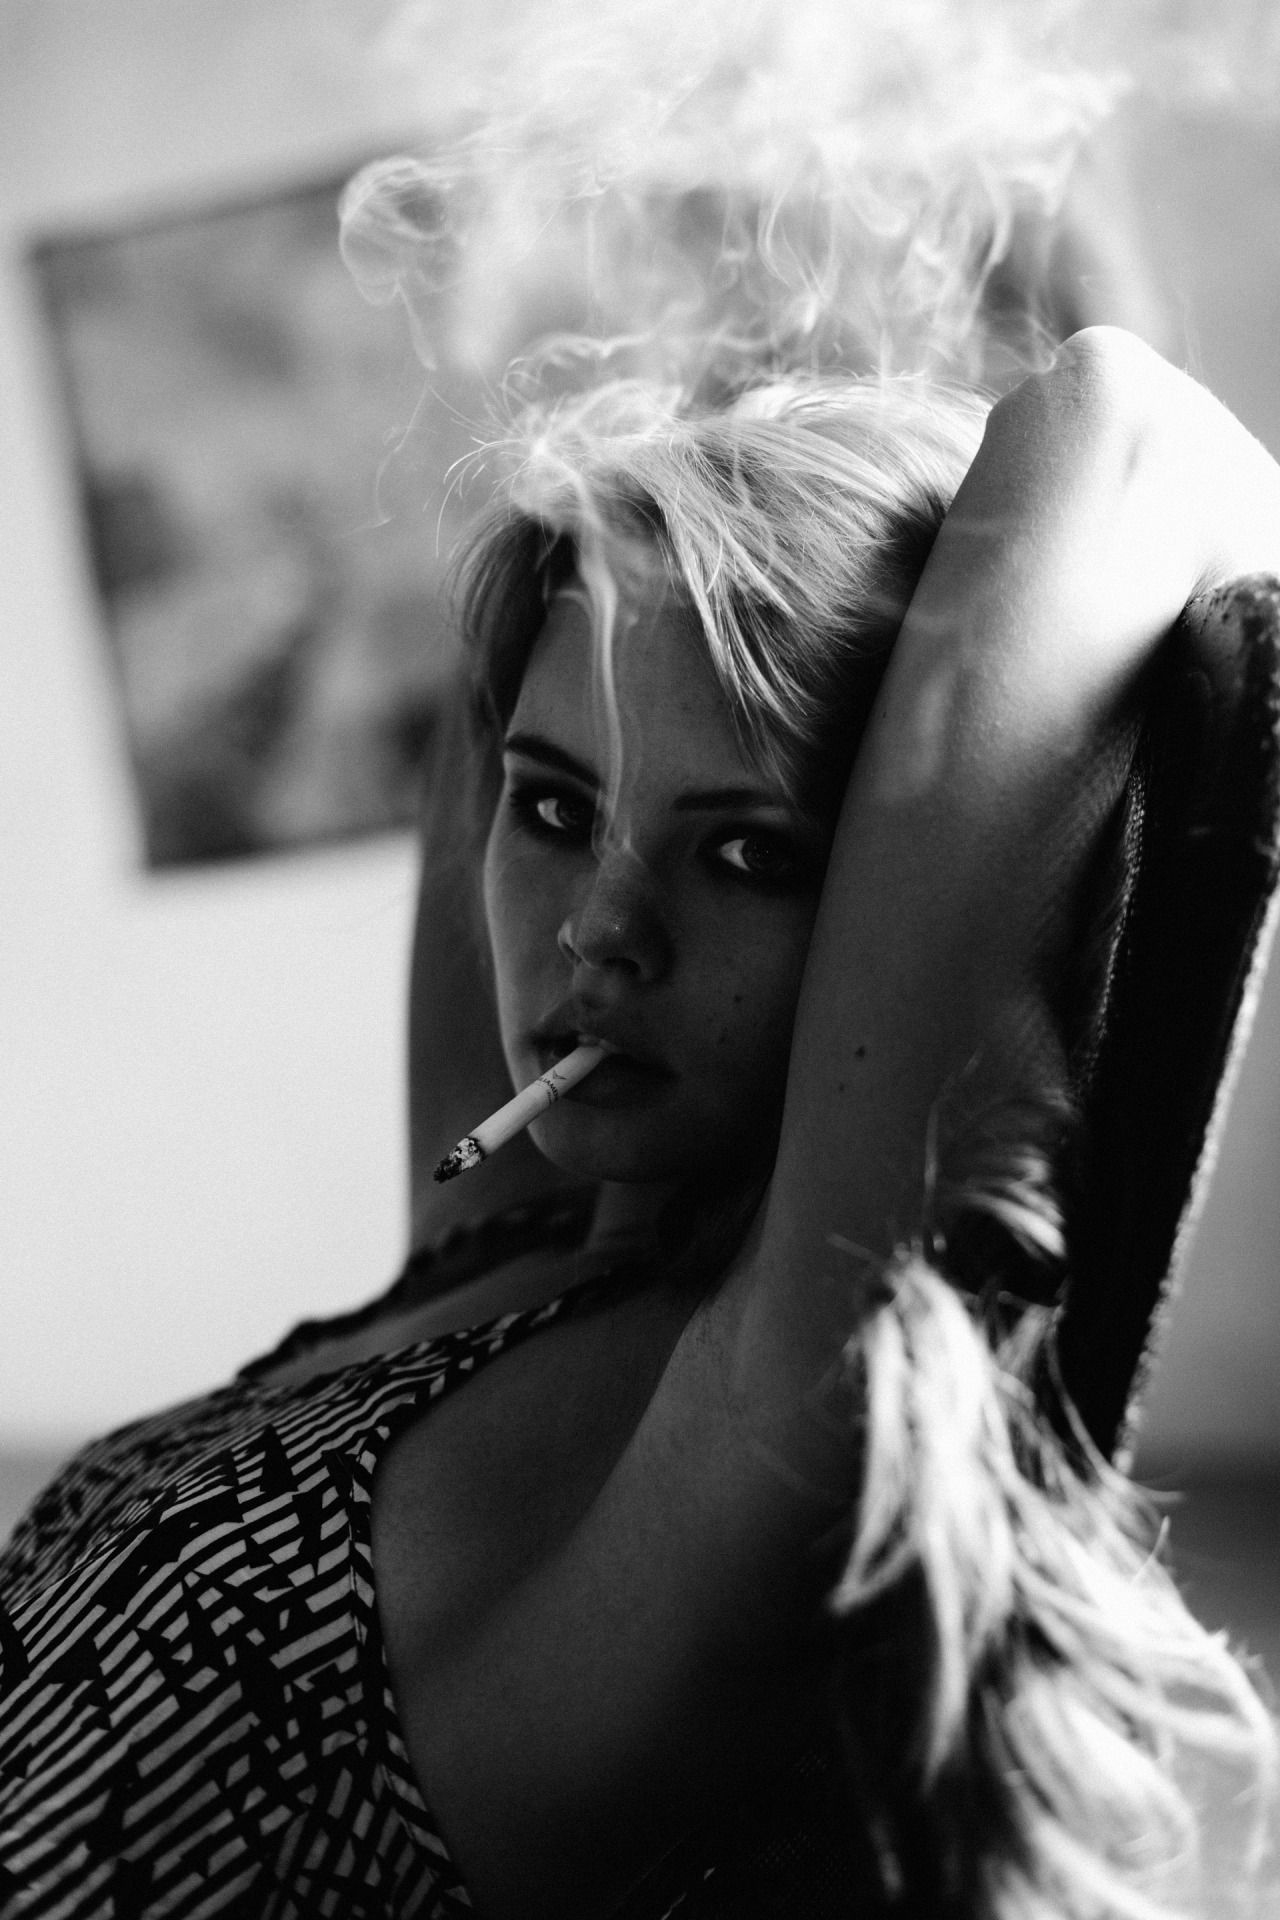 Черно белые фото женщин с сигаретой